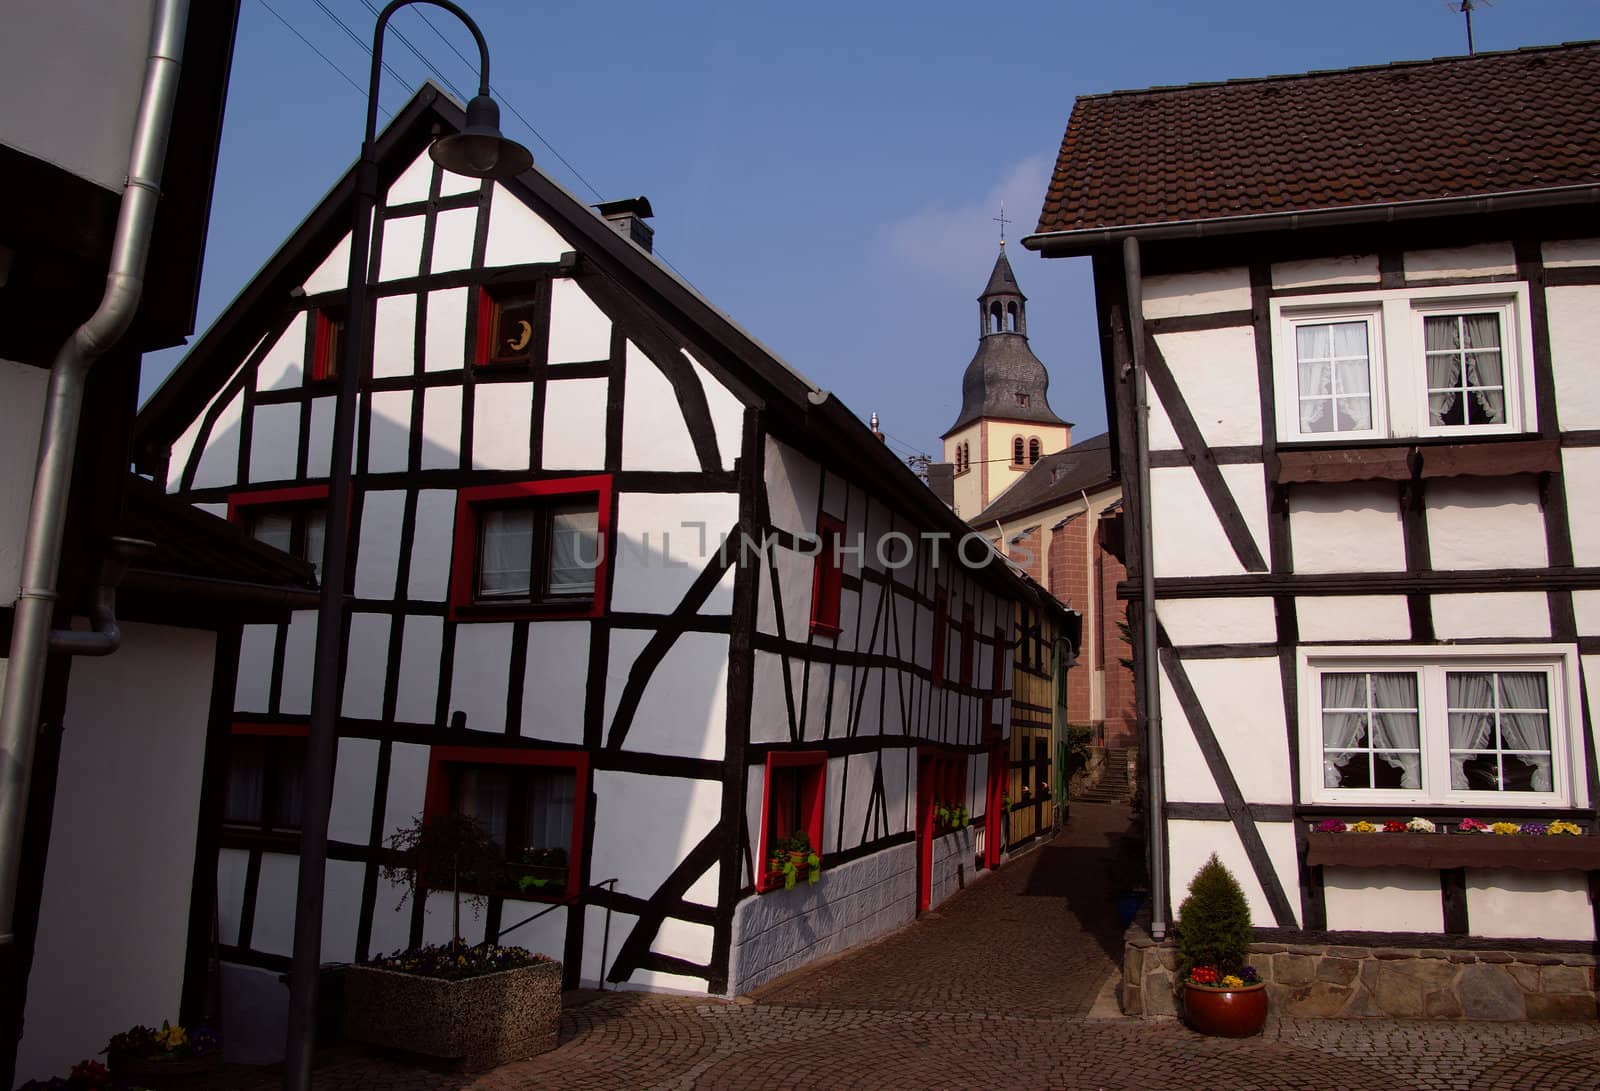 Old German town by saasemen